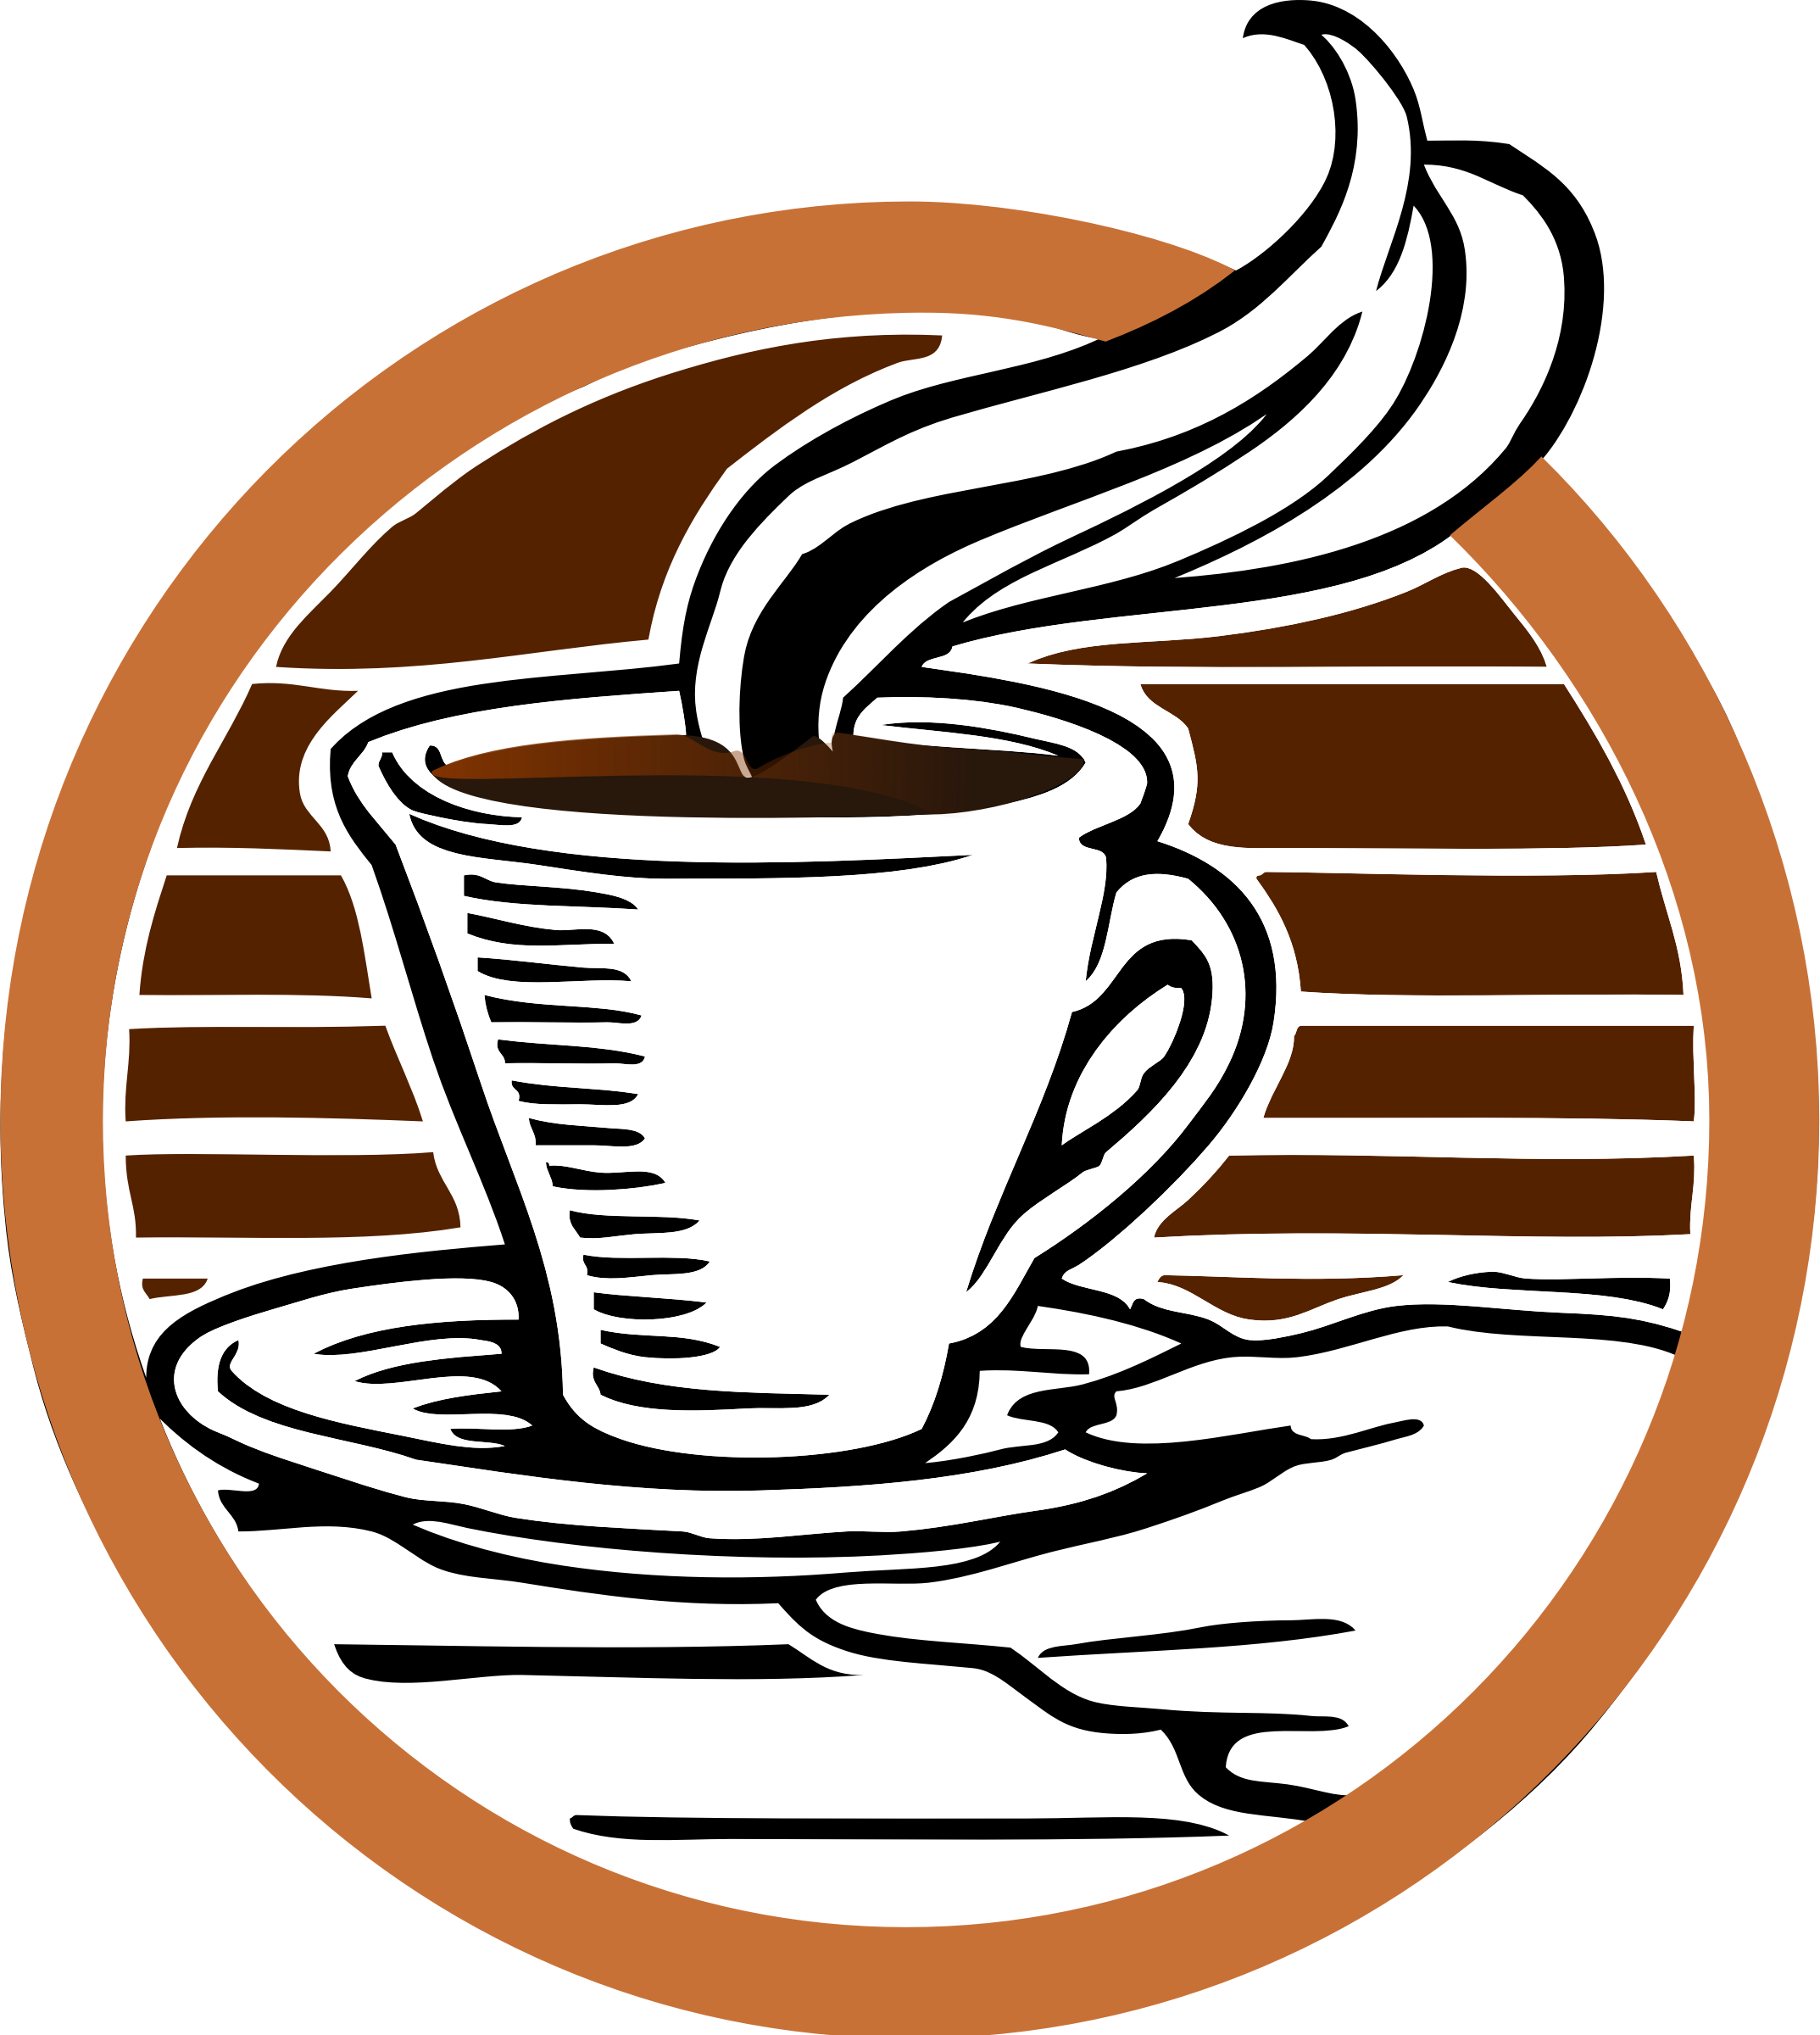 Logo cà phê trong suốt nền | PNG Mart: Logo cà phê trong suốt là một trong những ý tưởng thiết kế thú vị và tinh tế. Tại đây, bạn có thể tìm thấy những logo trong suốt cùng với nền PNG để thêm vào bất kỳ thiết kế nào. Thực sự là một cách tuyệt vời để làm cho logo của bạn trở nên sang trọng và cuốn hút hơn. Khám phá ngay tại PNG Mart.